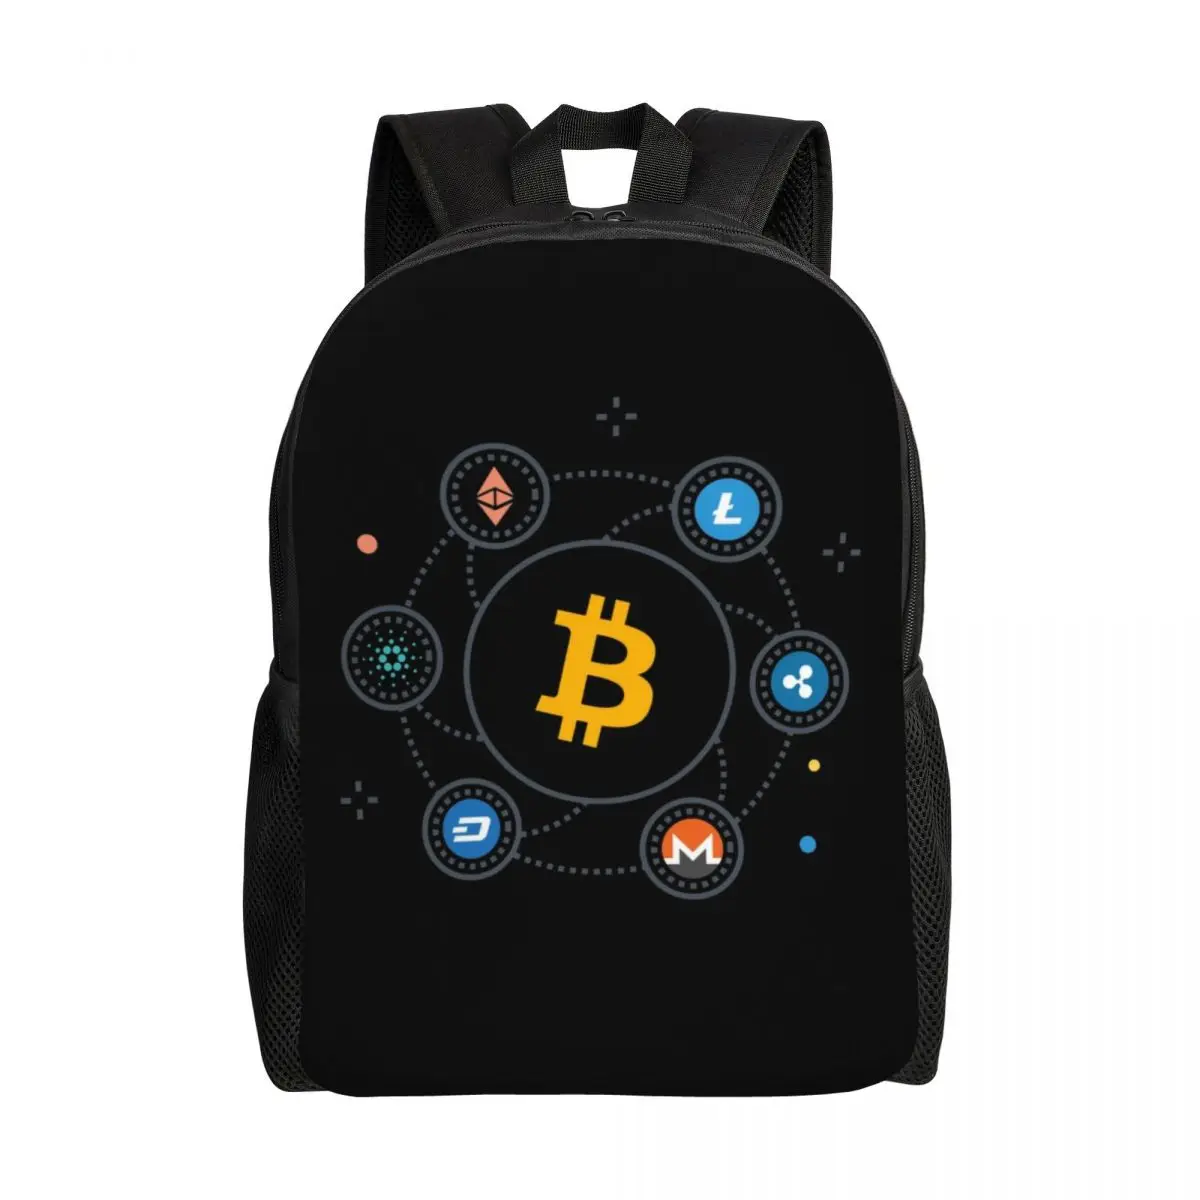 Поддержка рюкзаков с криптовалютой Bitcoin, Водонепроницаемая Школьная сумка для колледжа, цифровая валюта Ethereum, Блокчейн, сумка для печати, сумка для книг